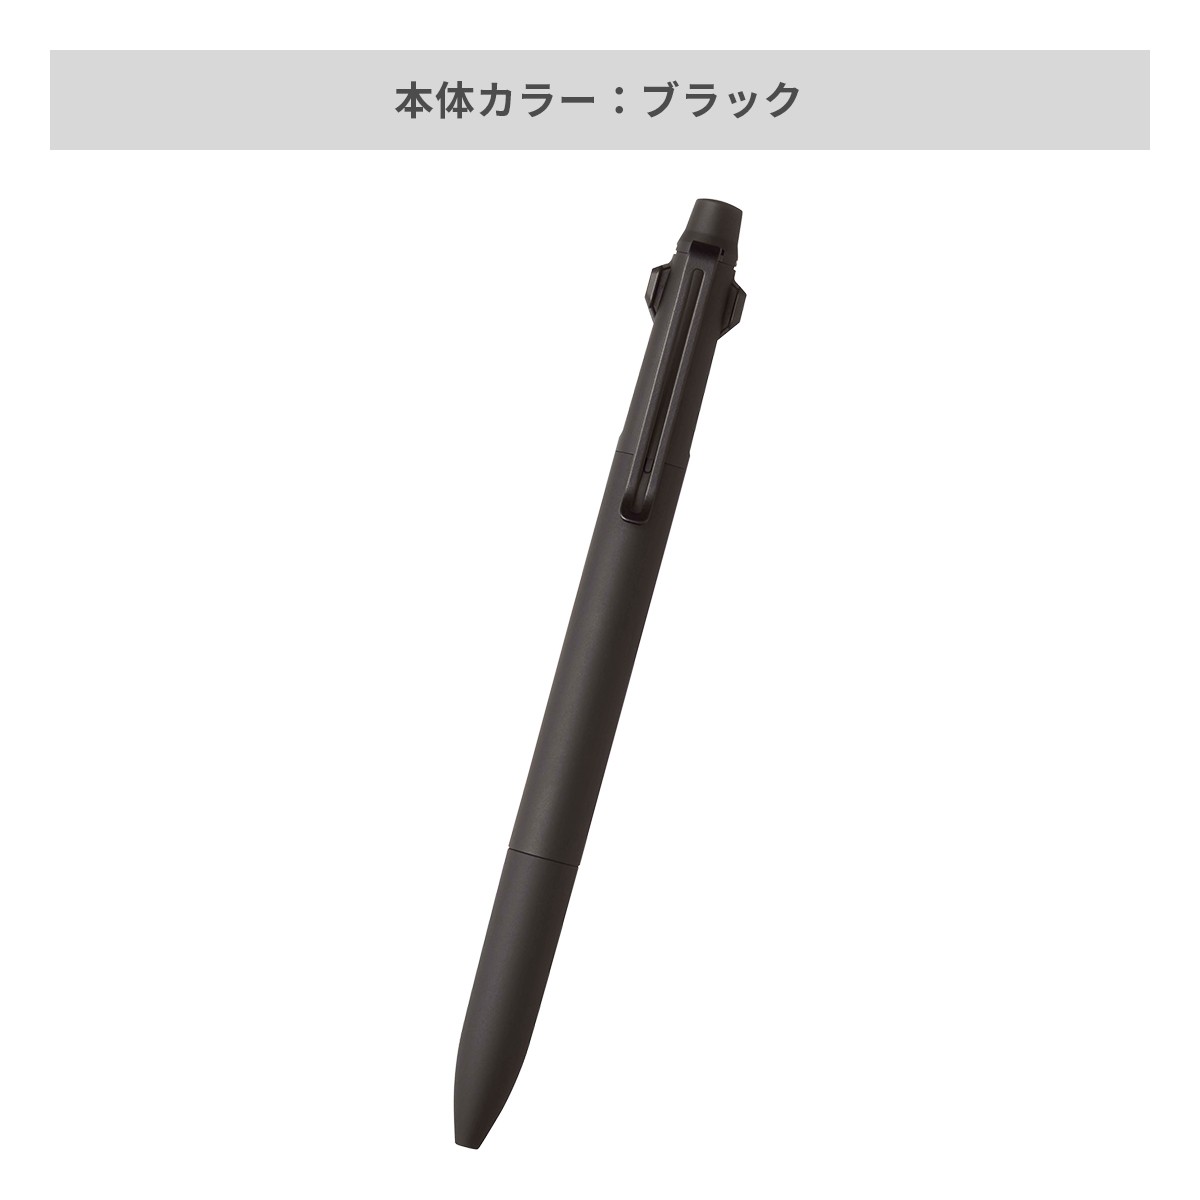 【短納期】三菱鉛筆 ジェットストリーム プライム 3色ボールペン 0.5mm【名入れボールペン / レーザー彫刻】 画像6